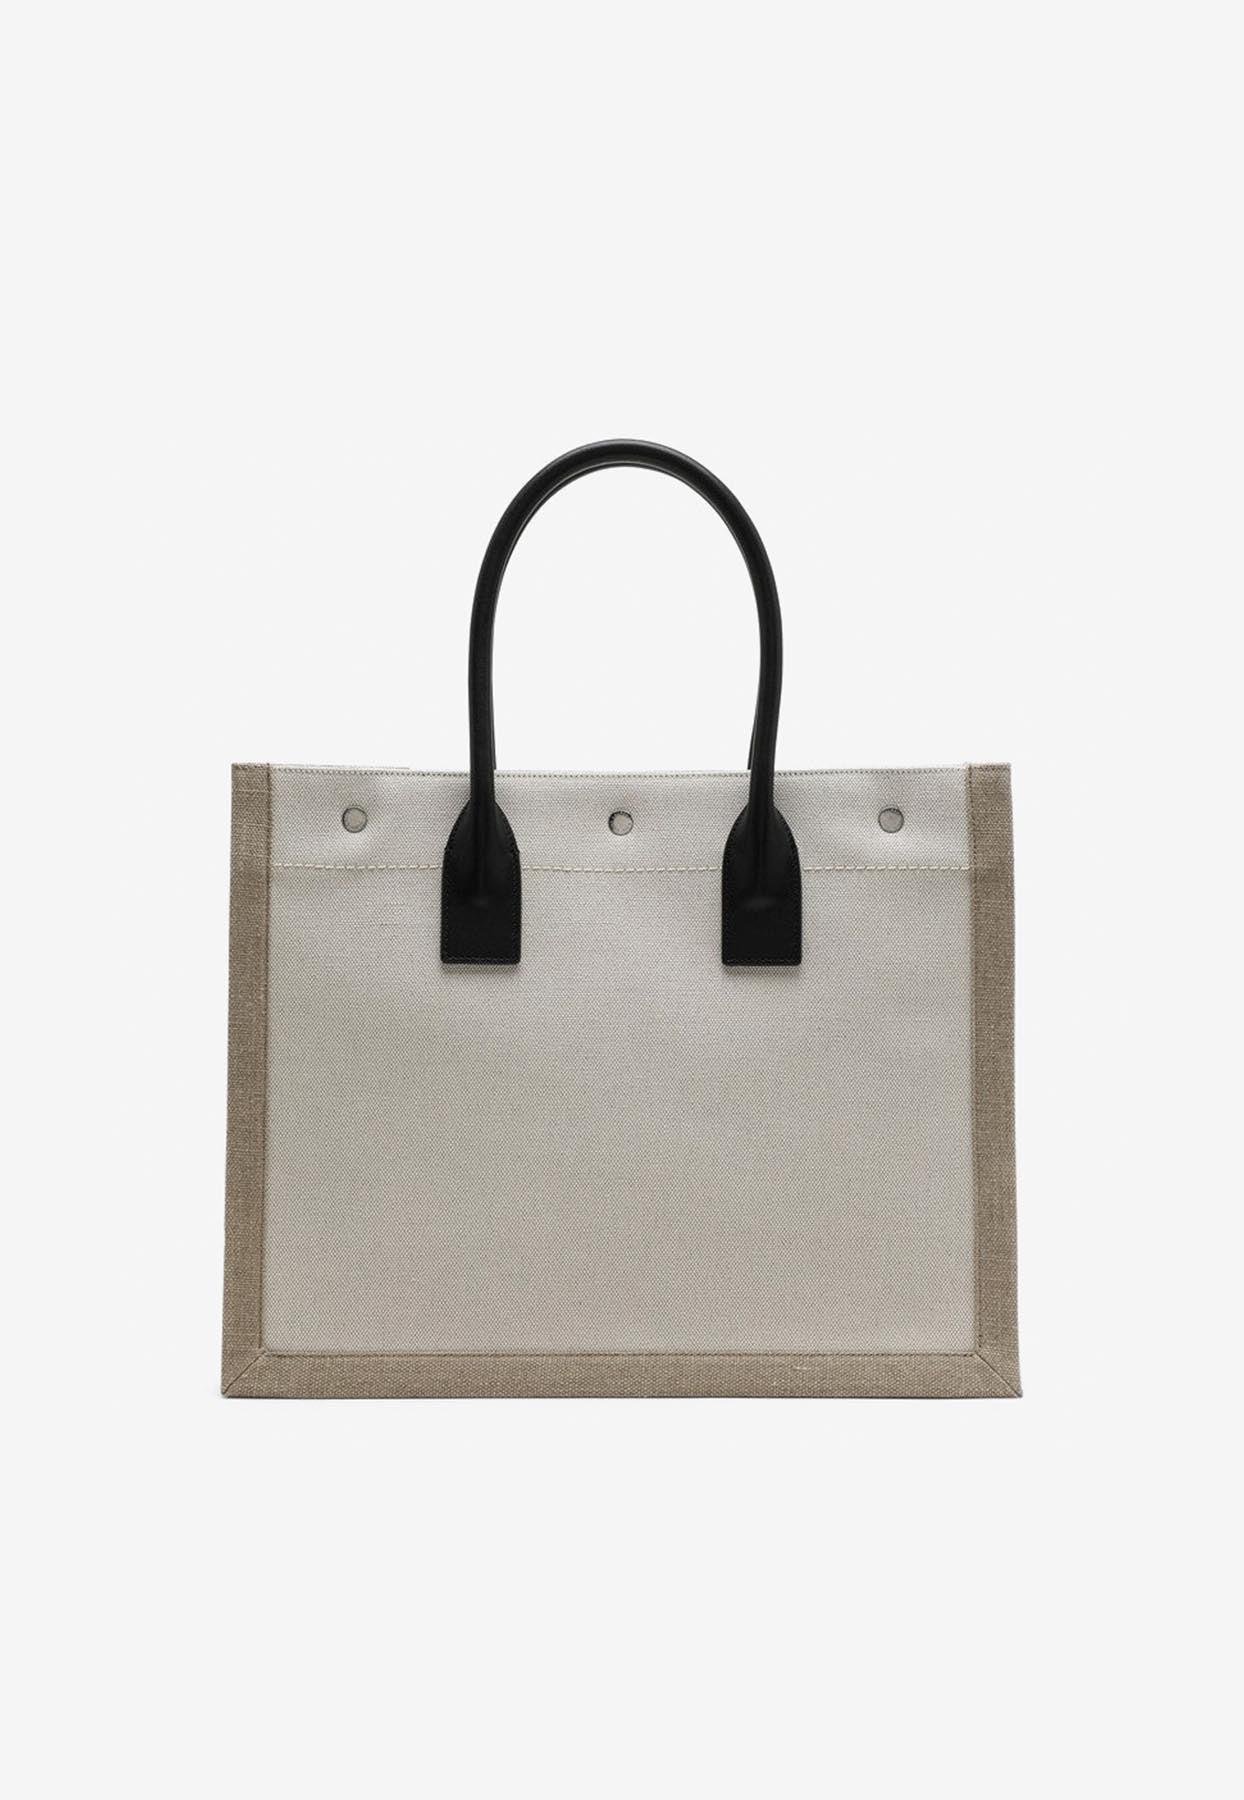 Saint Laurent Rive Gauche Small Tote Bag in Mesh - Bergdorf Goodman